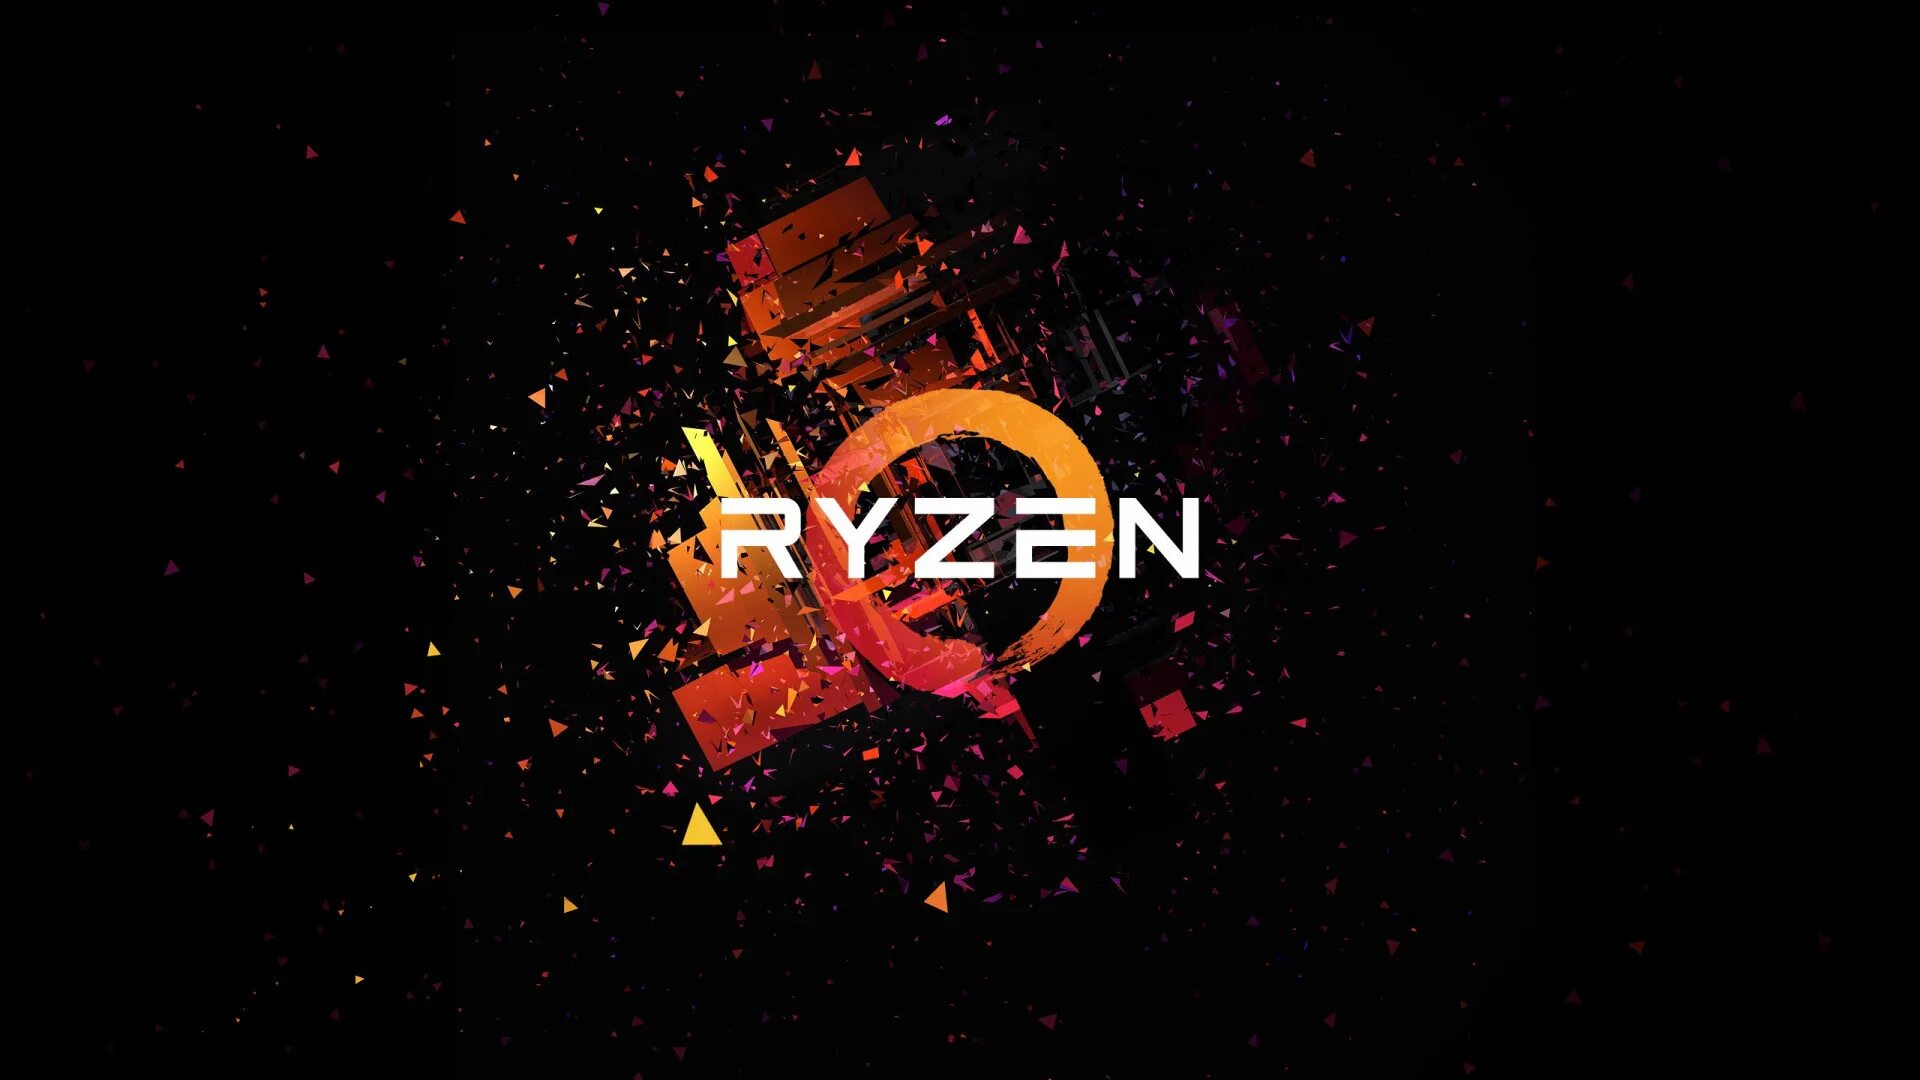 Ryzen 1920x1080. Фон Ryzen. Обои Ryzen. Фон AMD Ryzen.